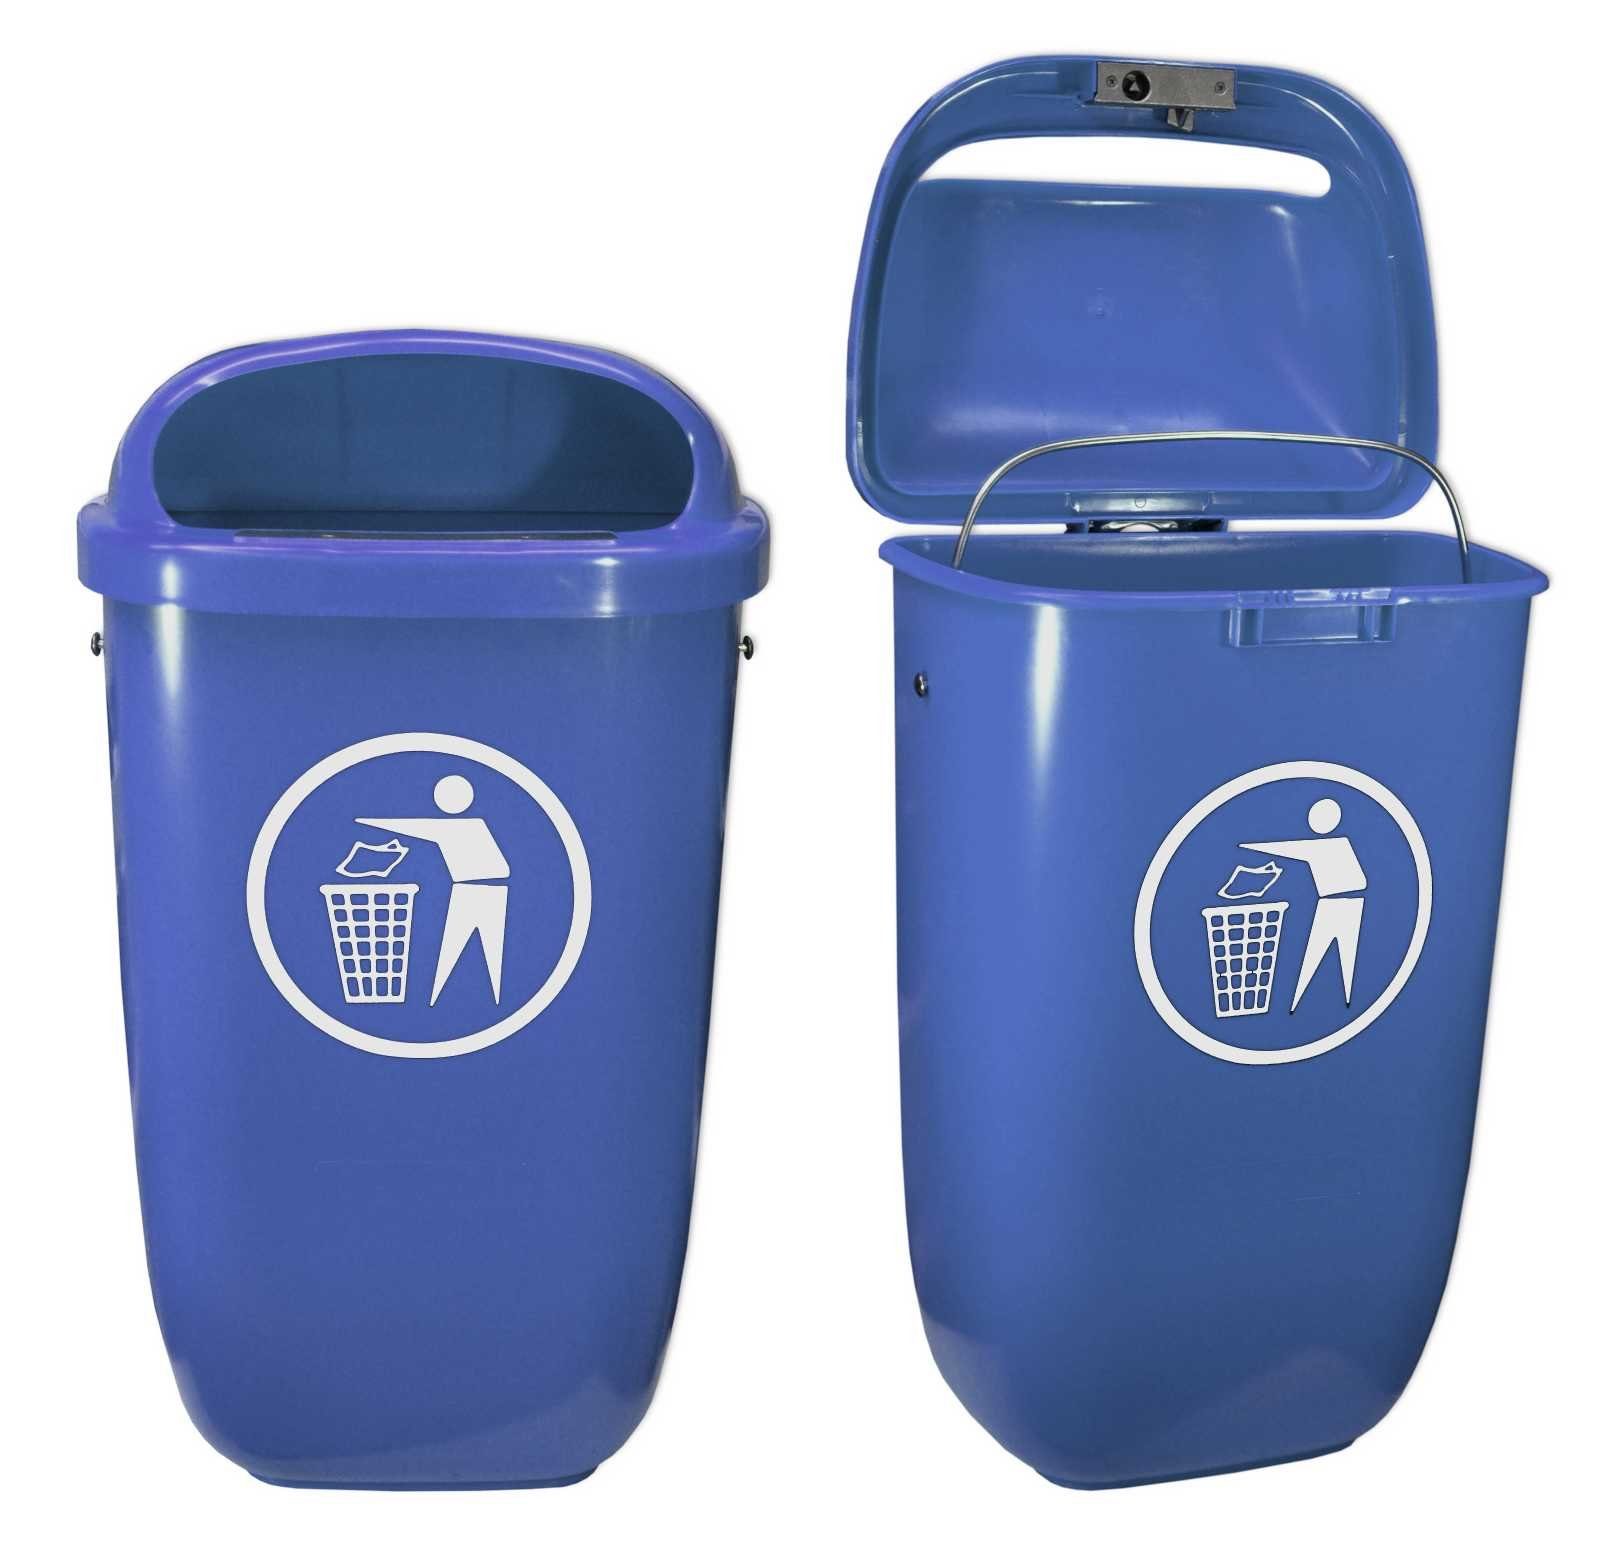 Abfallbehälter Set mit Mülleimer Papierkorb Regenhaube Sulo blau Original SULO